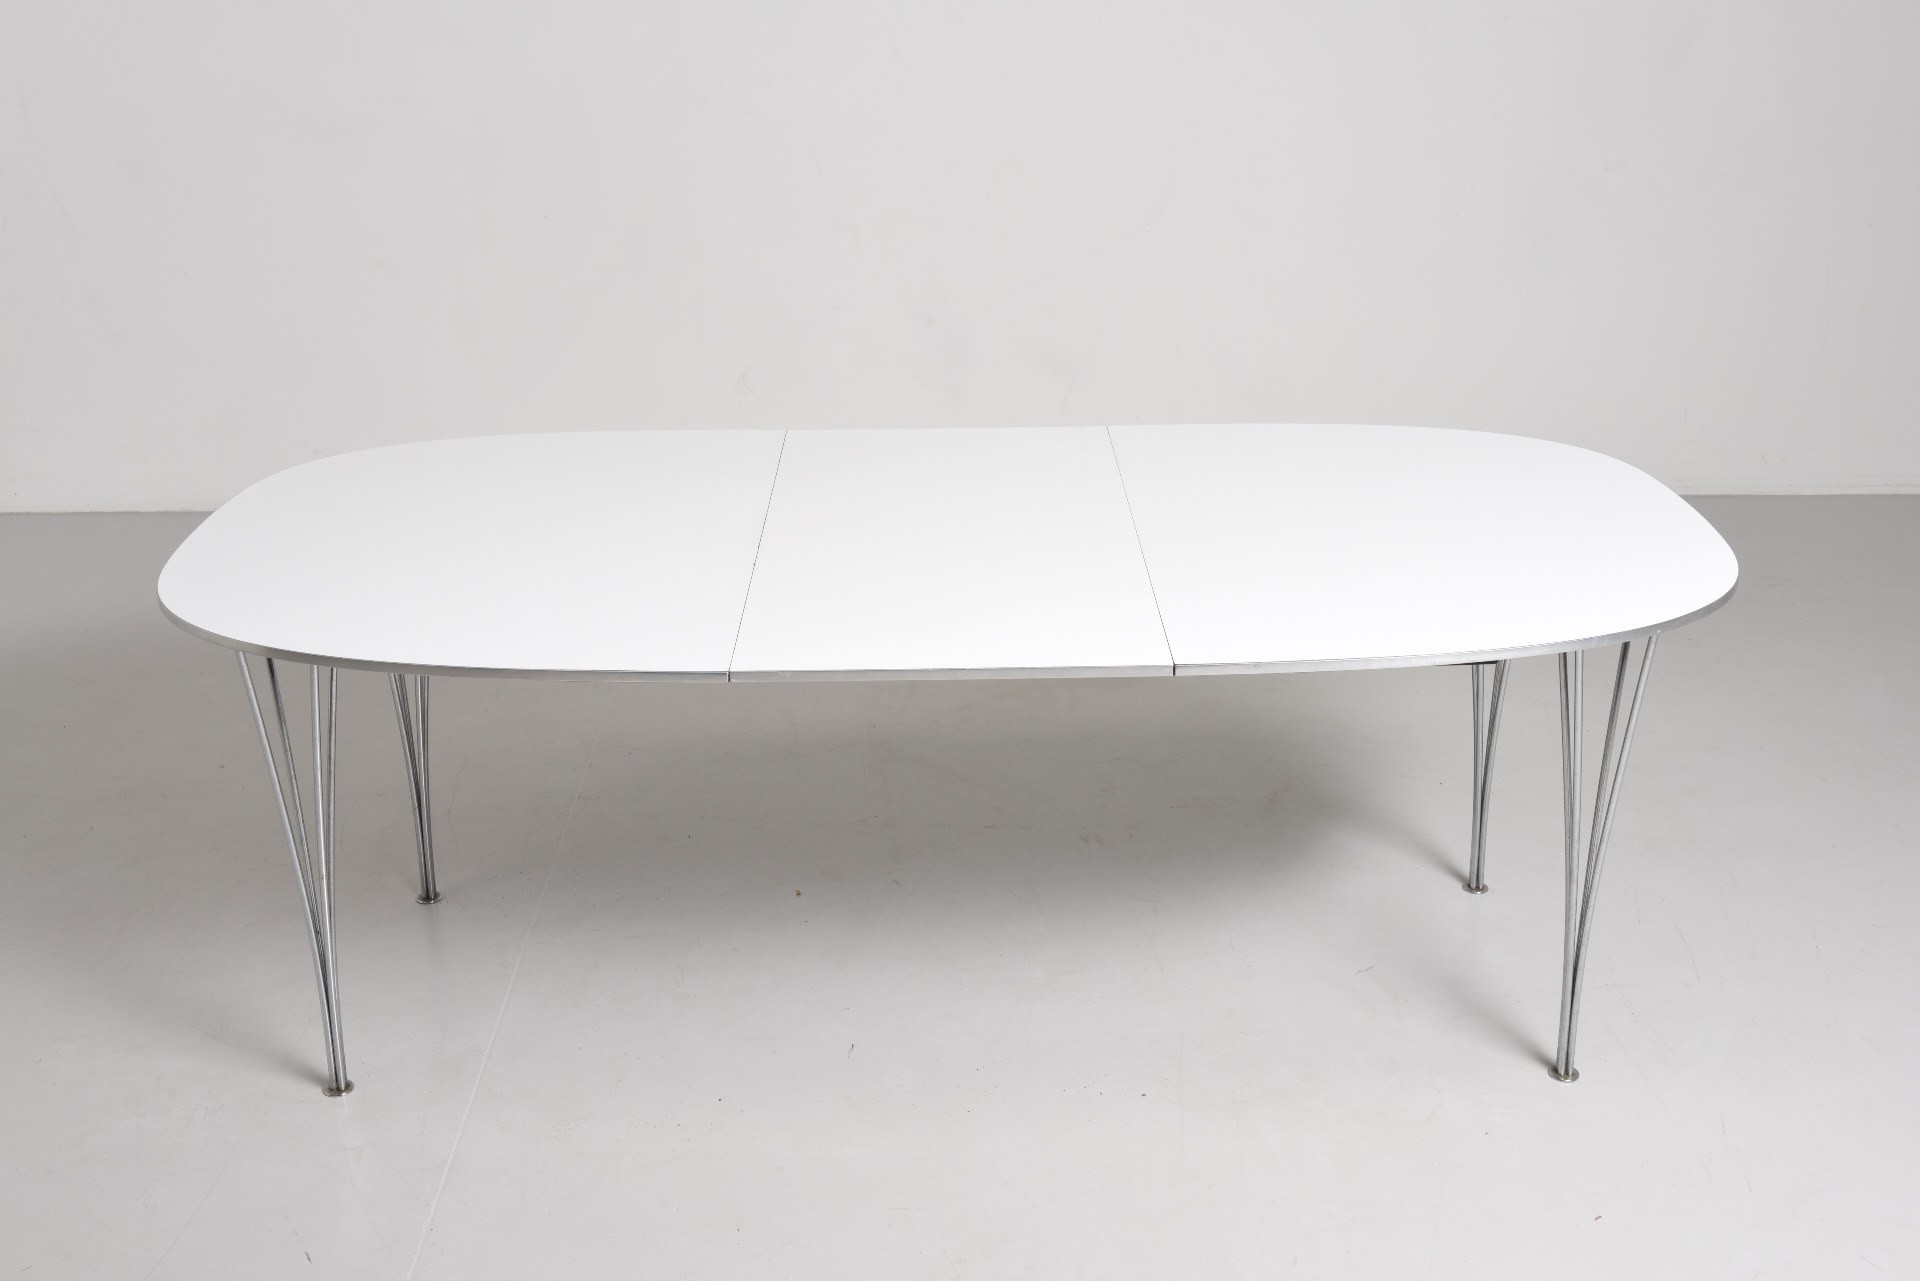 1654182215-fritz-hansen-white-extending-table-superellipse-piet-hein-bruno-mathsson-1968.jpg